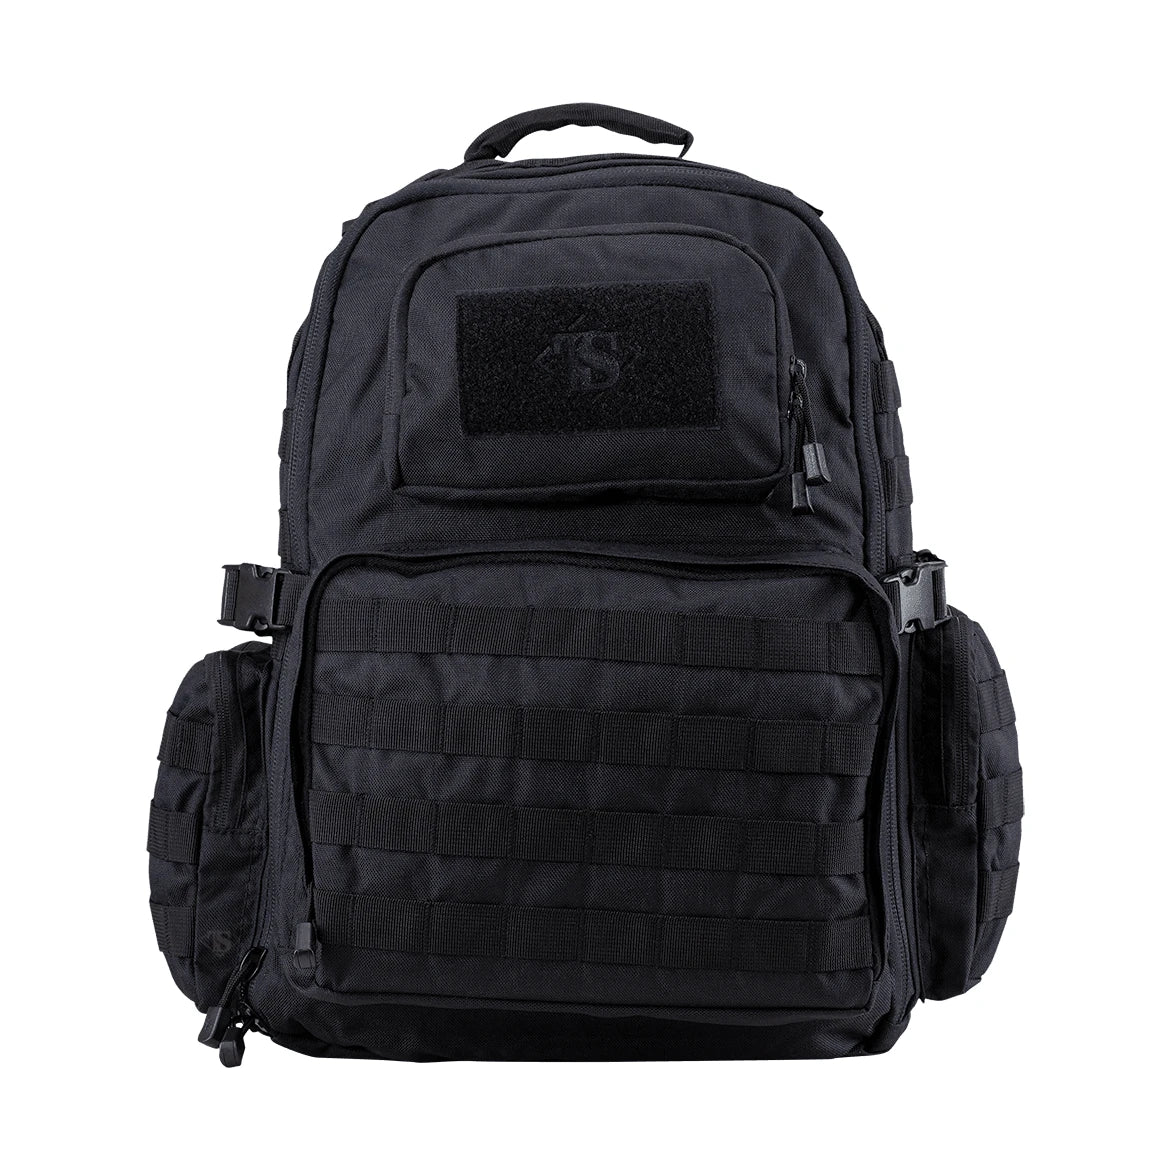 Pathfinder backpack